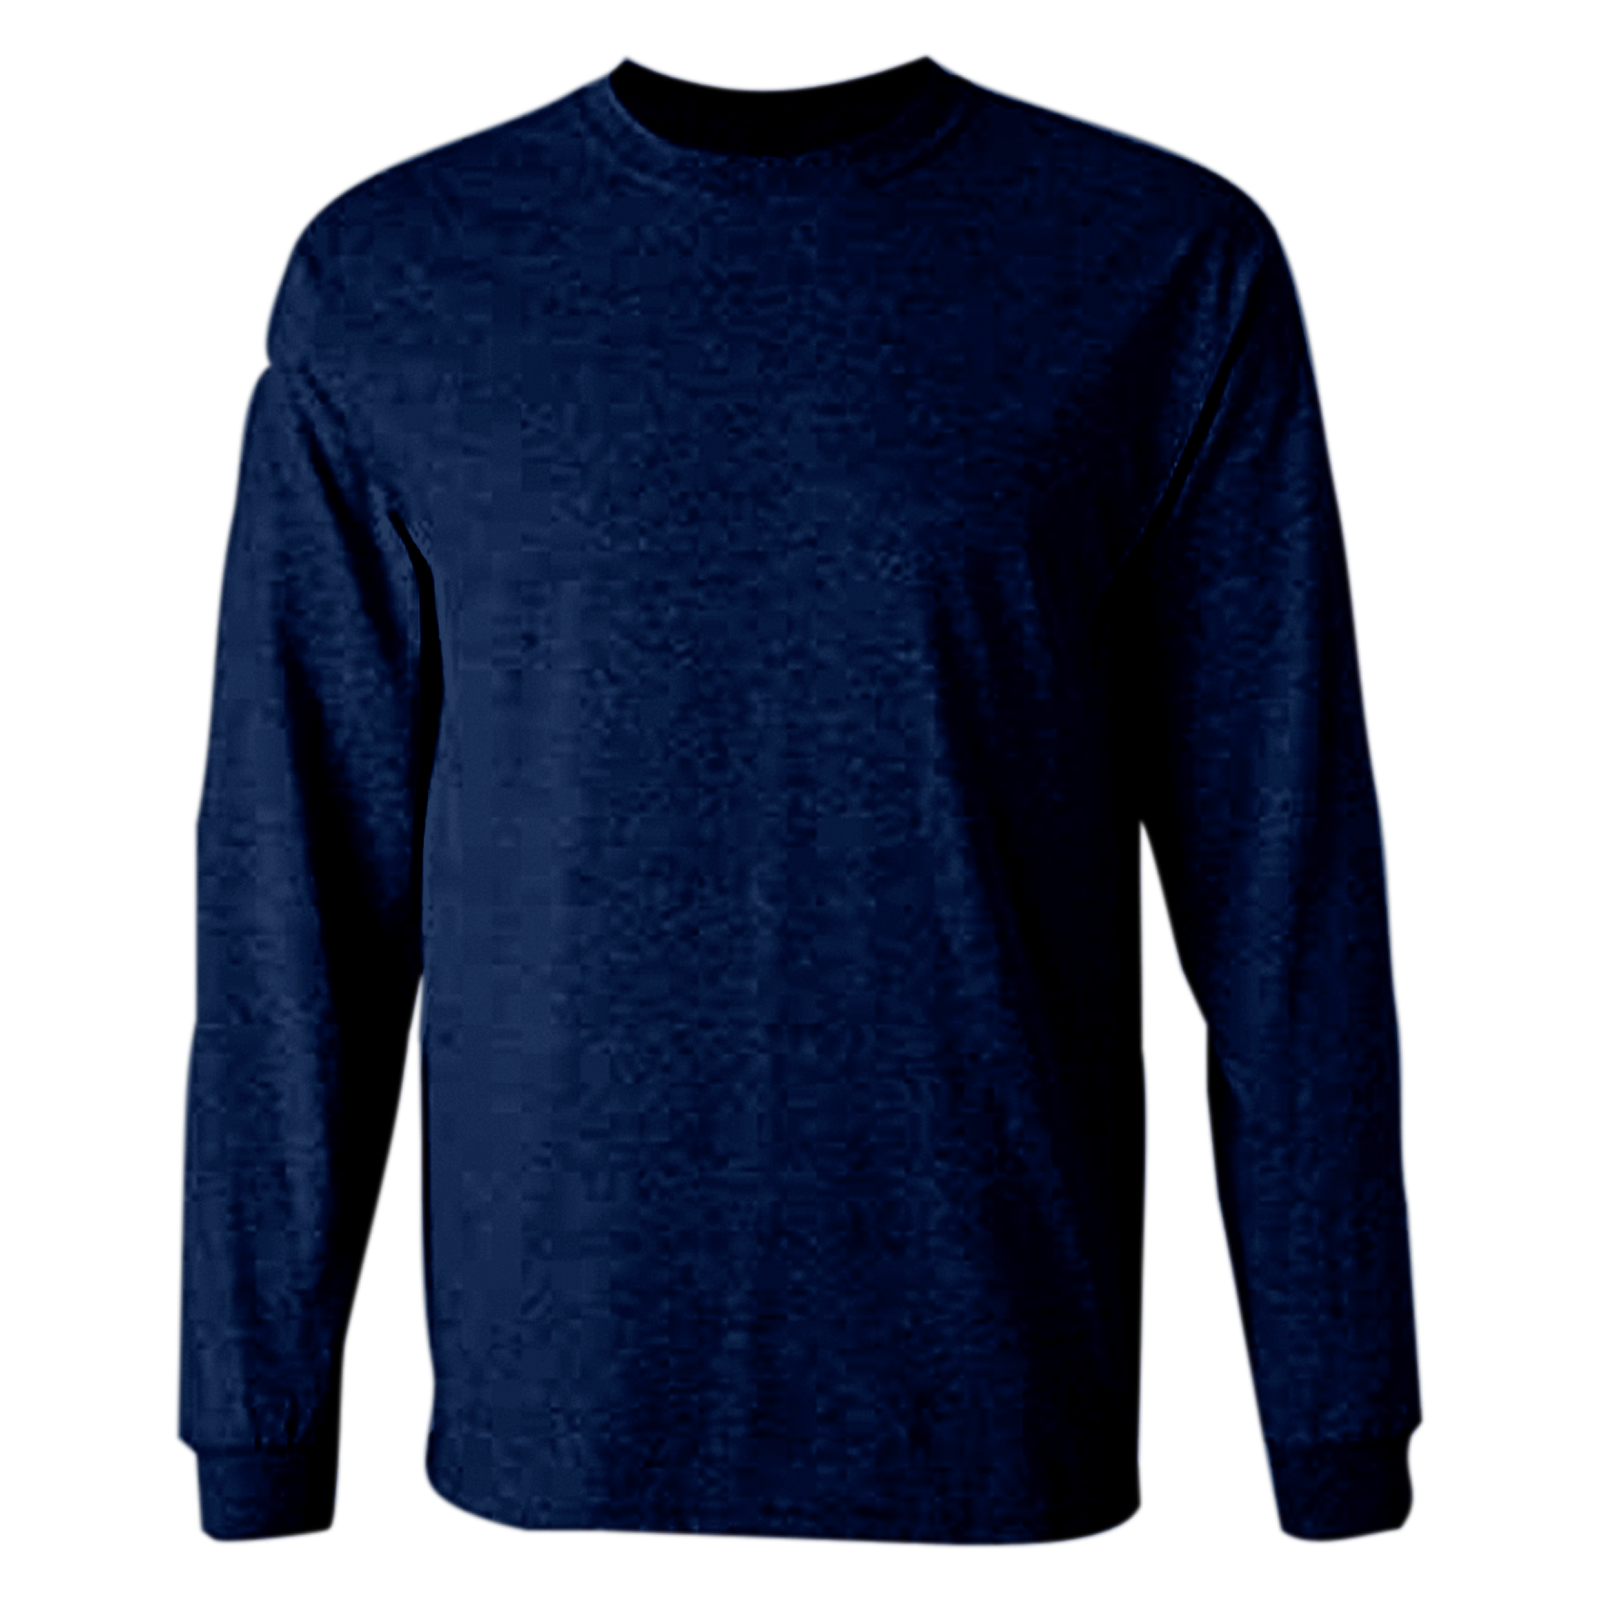 Navy Blue Full Sleeves T-Shirt